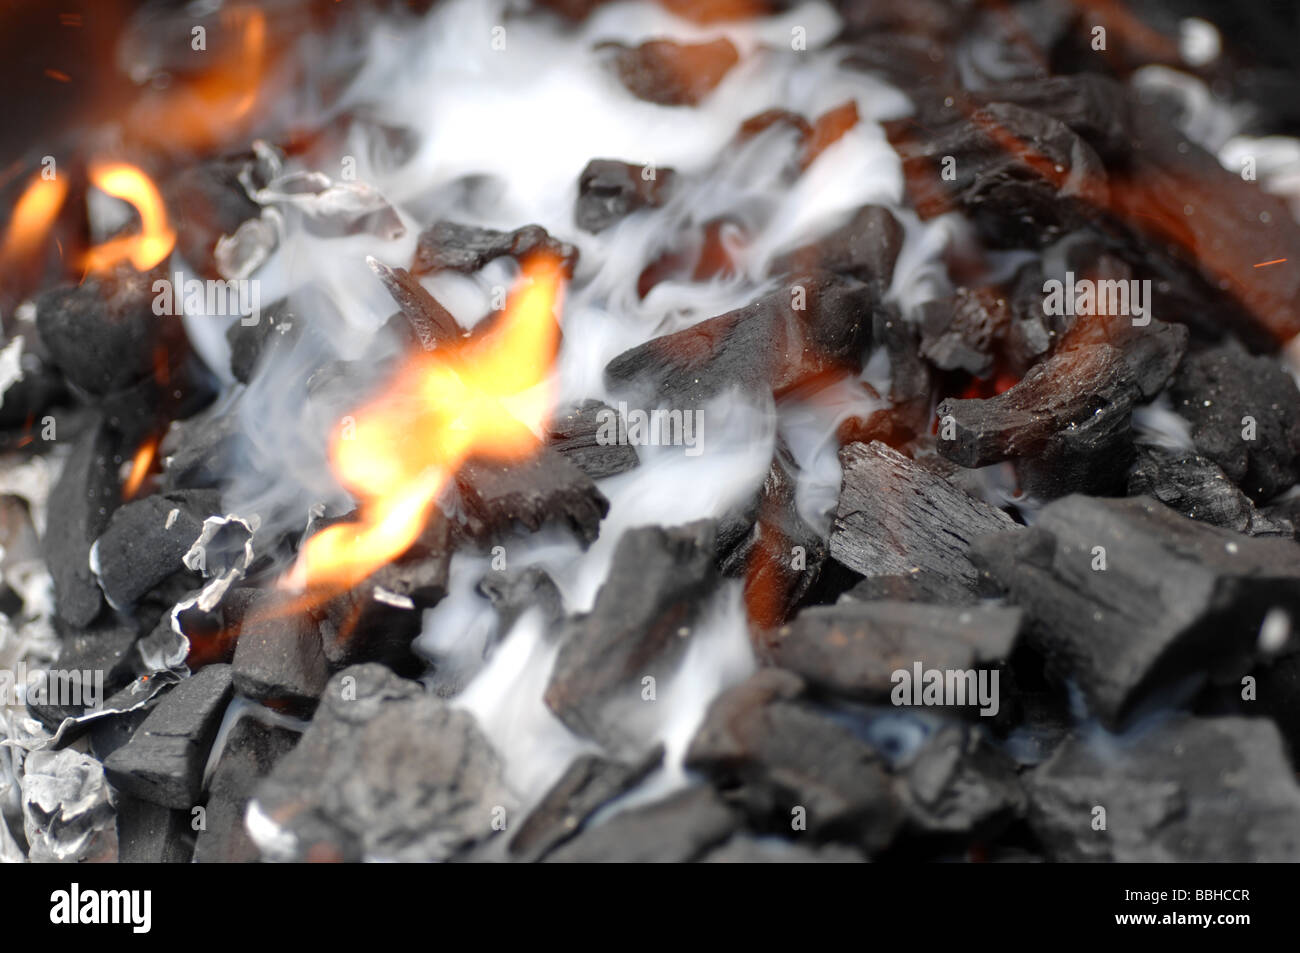 El carbón de leña, barbacoa Barbacoa Chimenea de carbón Foto de stock